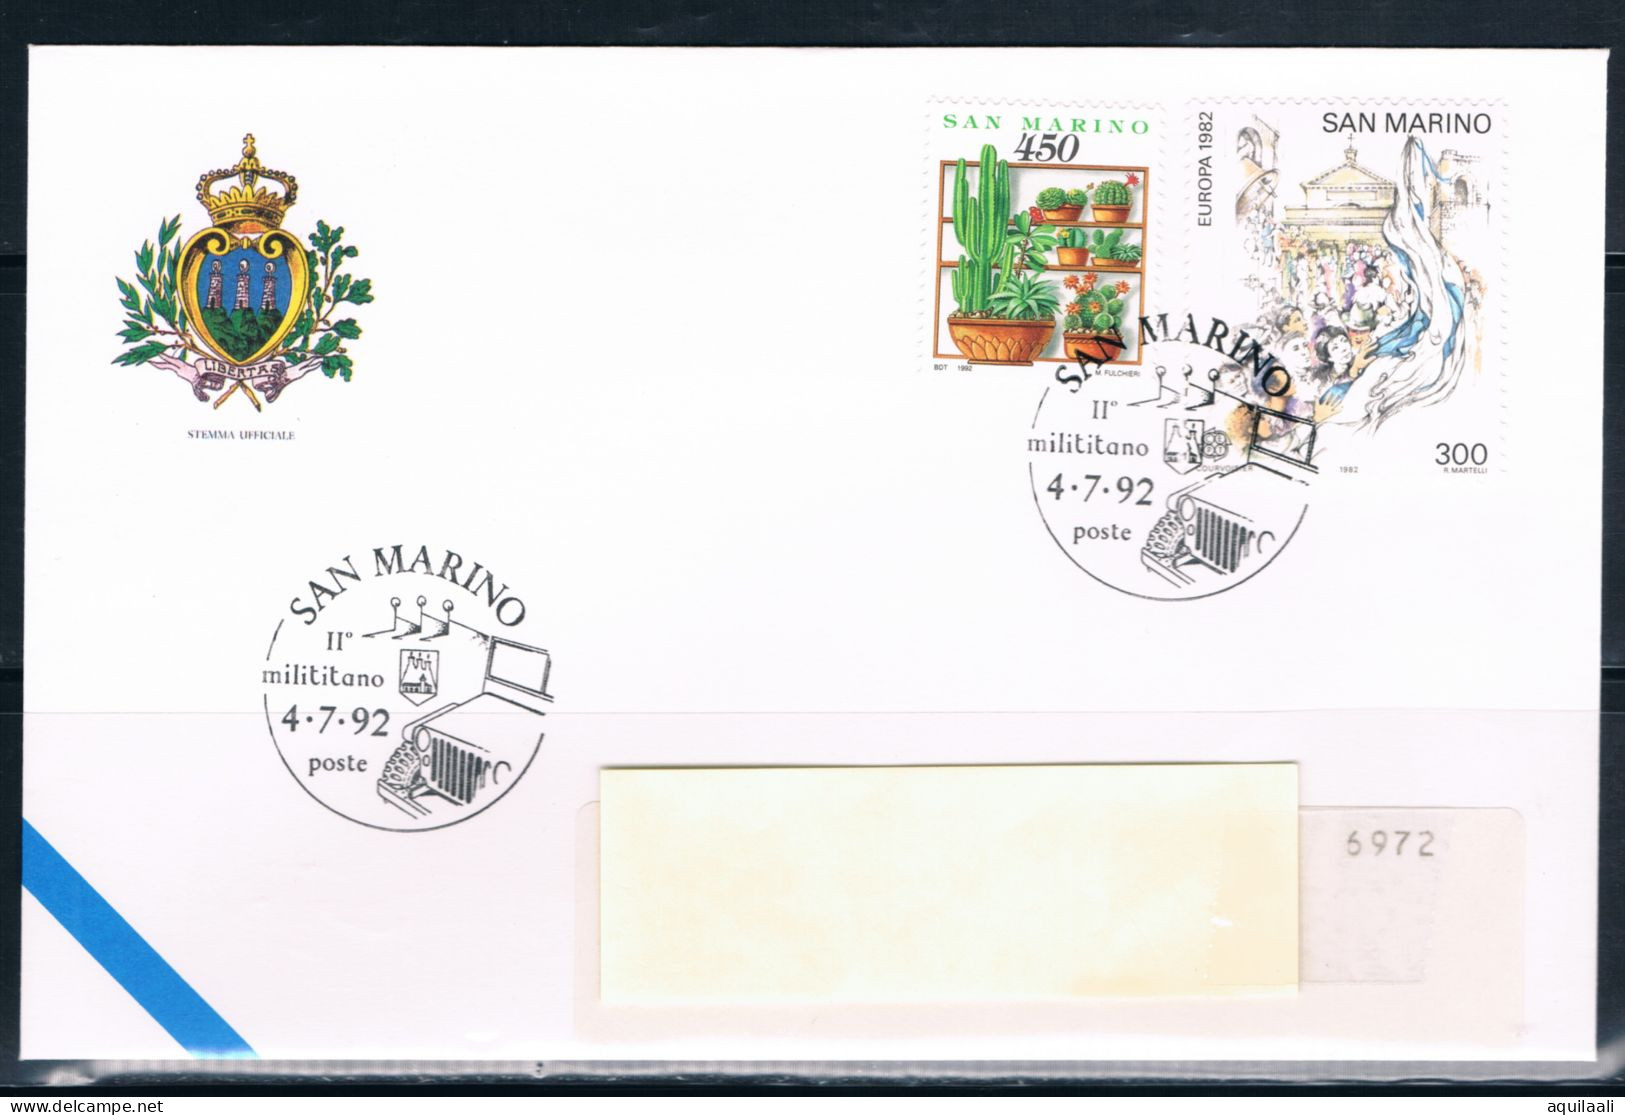 SAN MARINO 1992 -"Milititano" 04/7/1992 Annullo Speciale. - Briefmarkenausstellungen